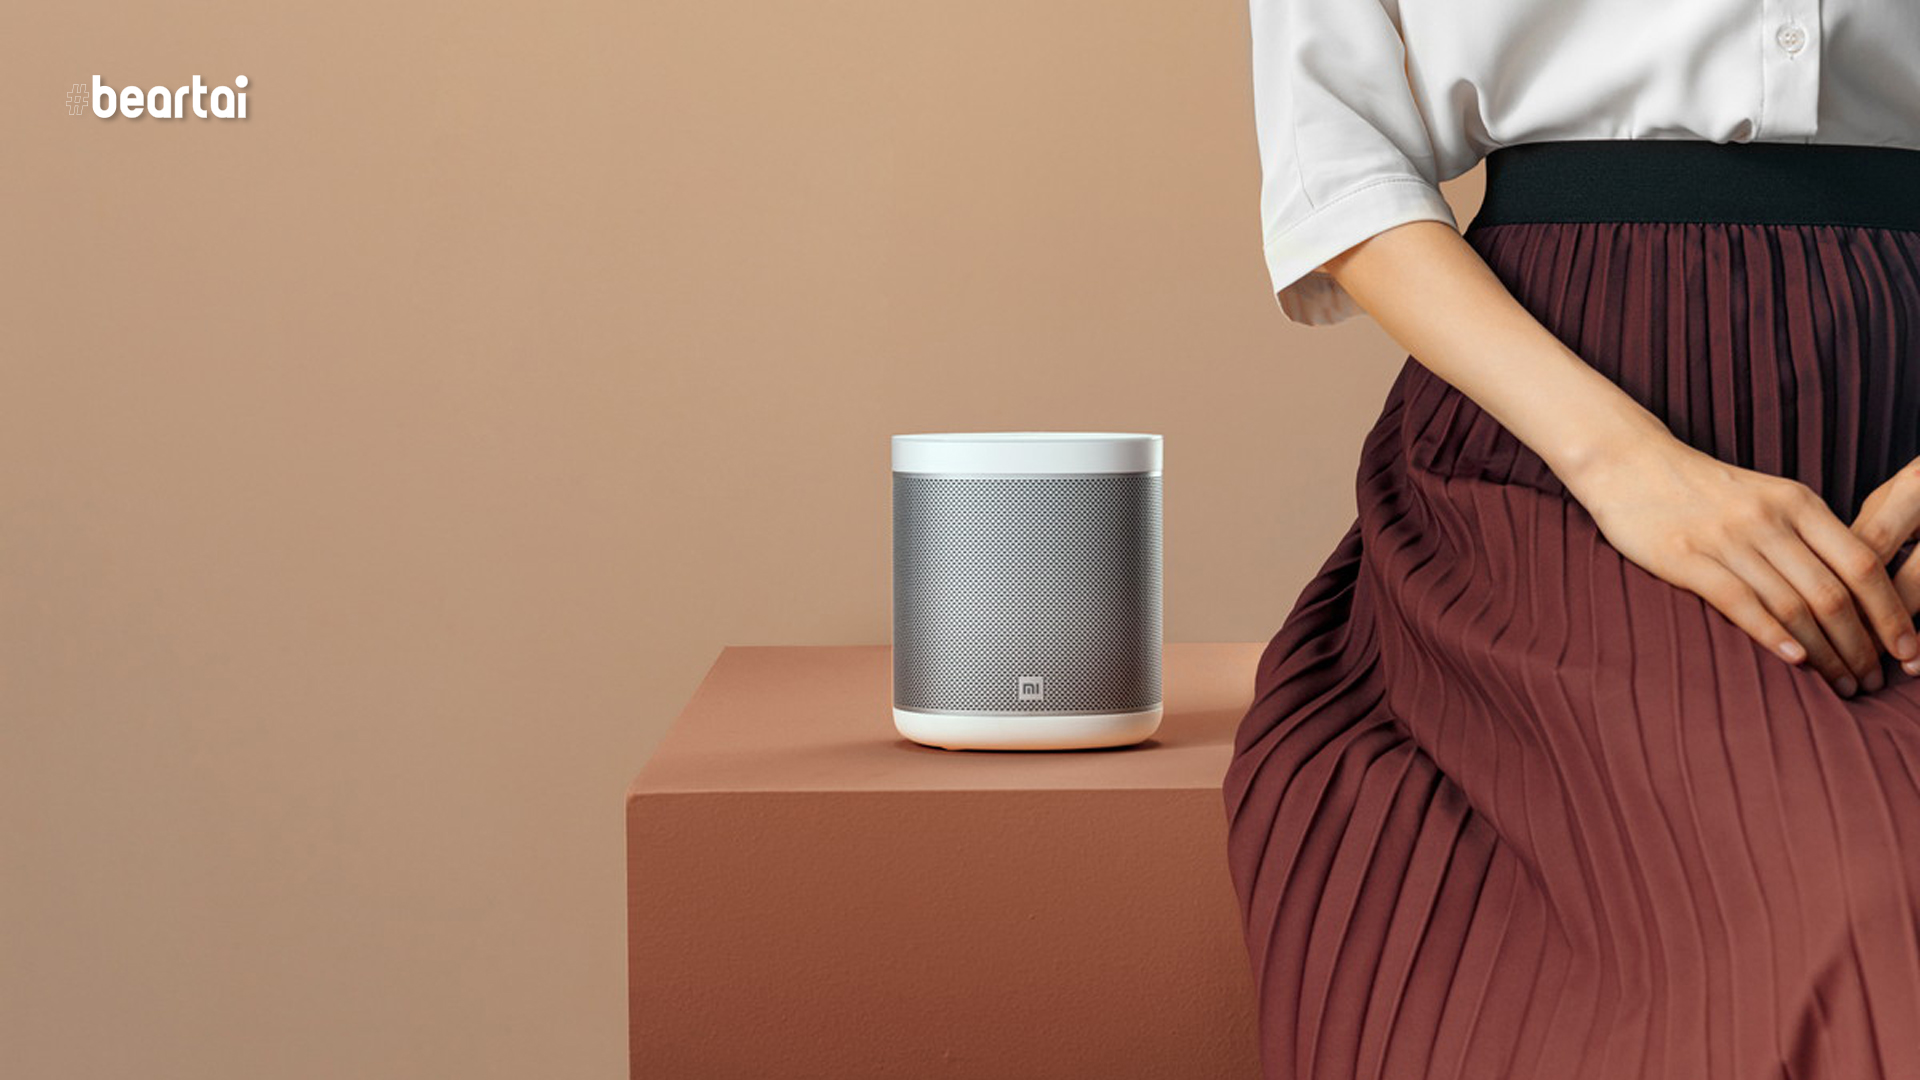 เปิดตัว Mi Smart Speaker ราคาเพียง 1,690 บาท พร้อมใช้ Google Assistant ได้!